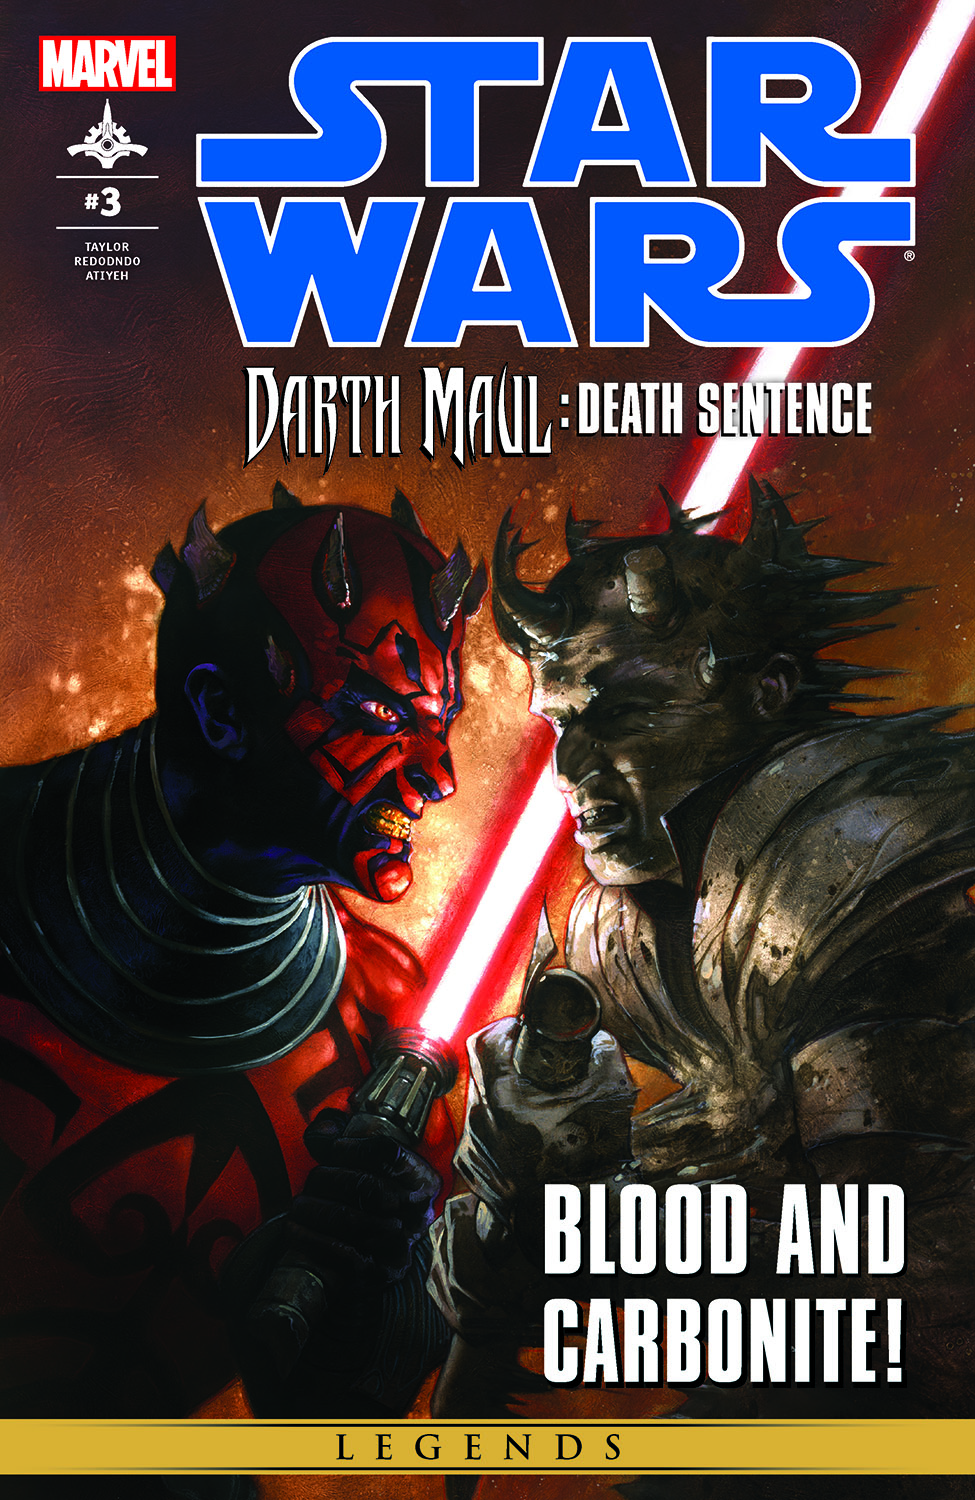 Star Wars: Darth Maul - Death Sentence (2012) #3